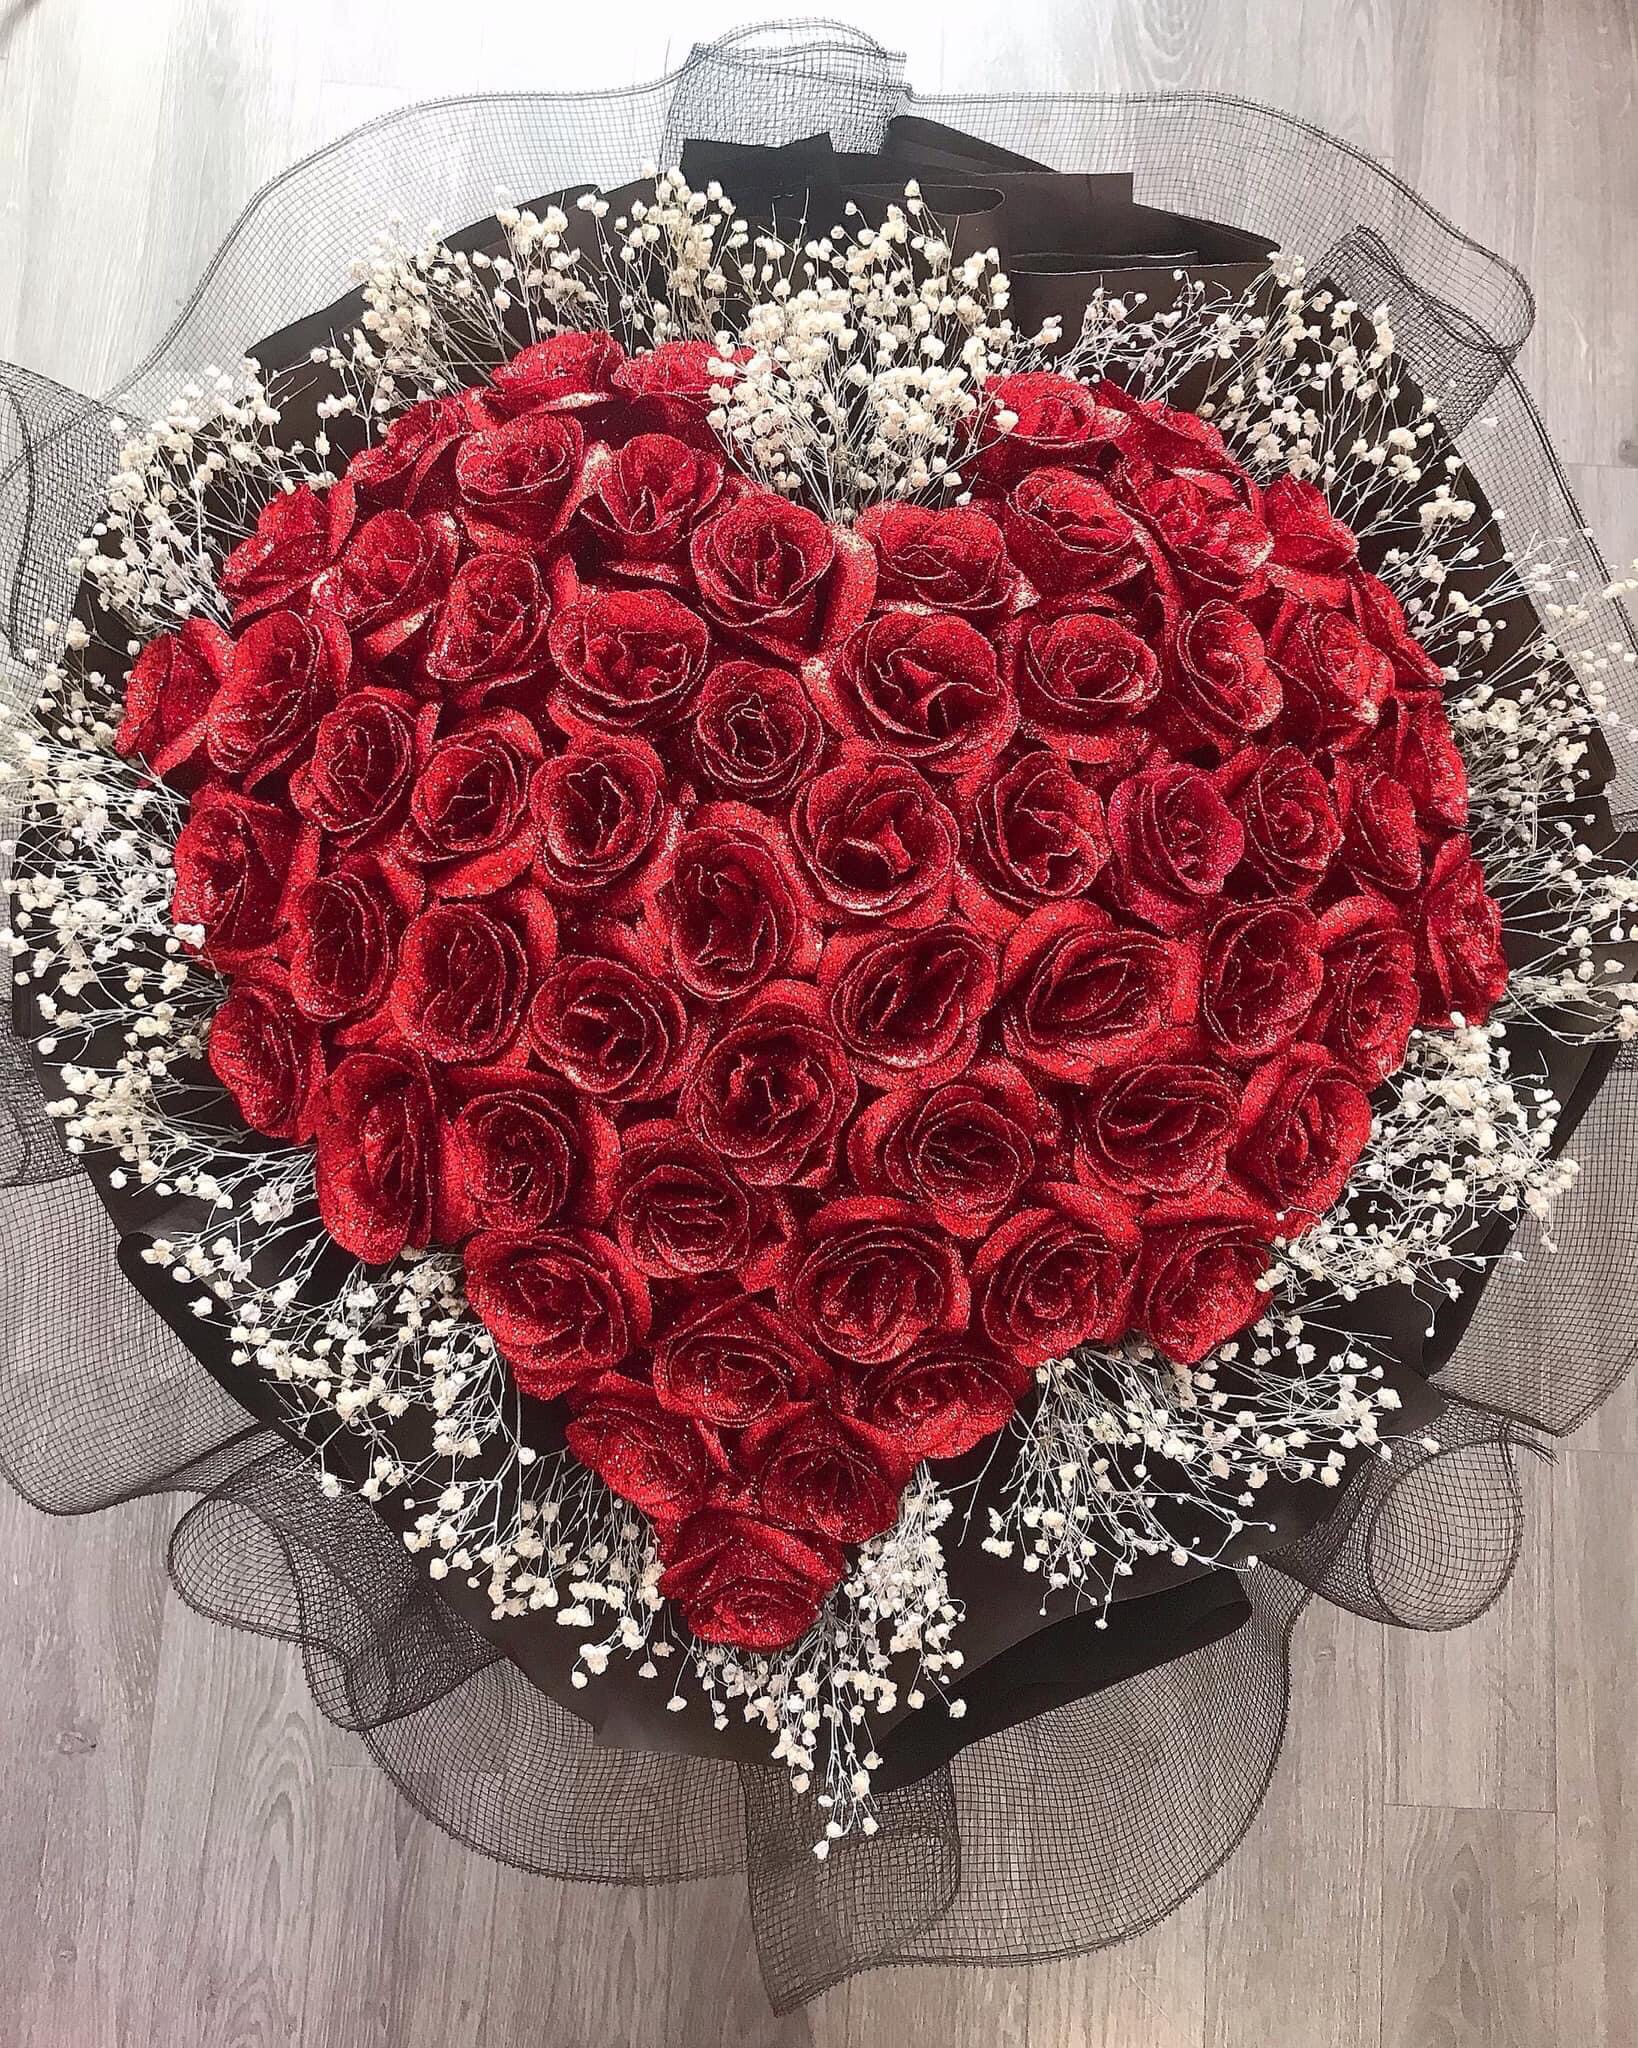 99 bông hồng sáp hình trái tim  ghép chữ cái theo yêu cầu   HOA SÁP BÌNH  DƯƠNG